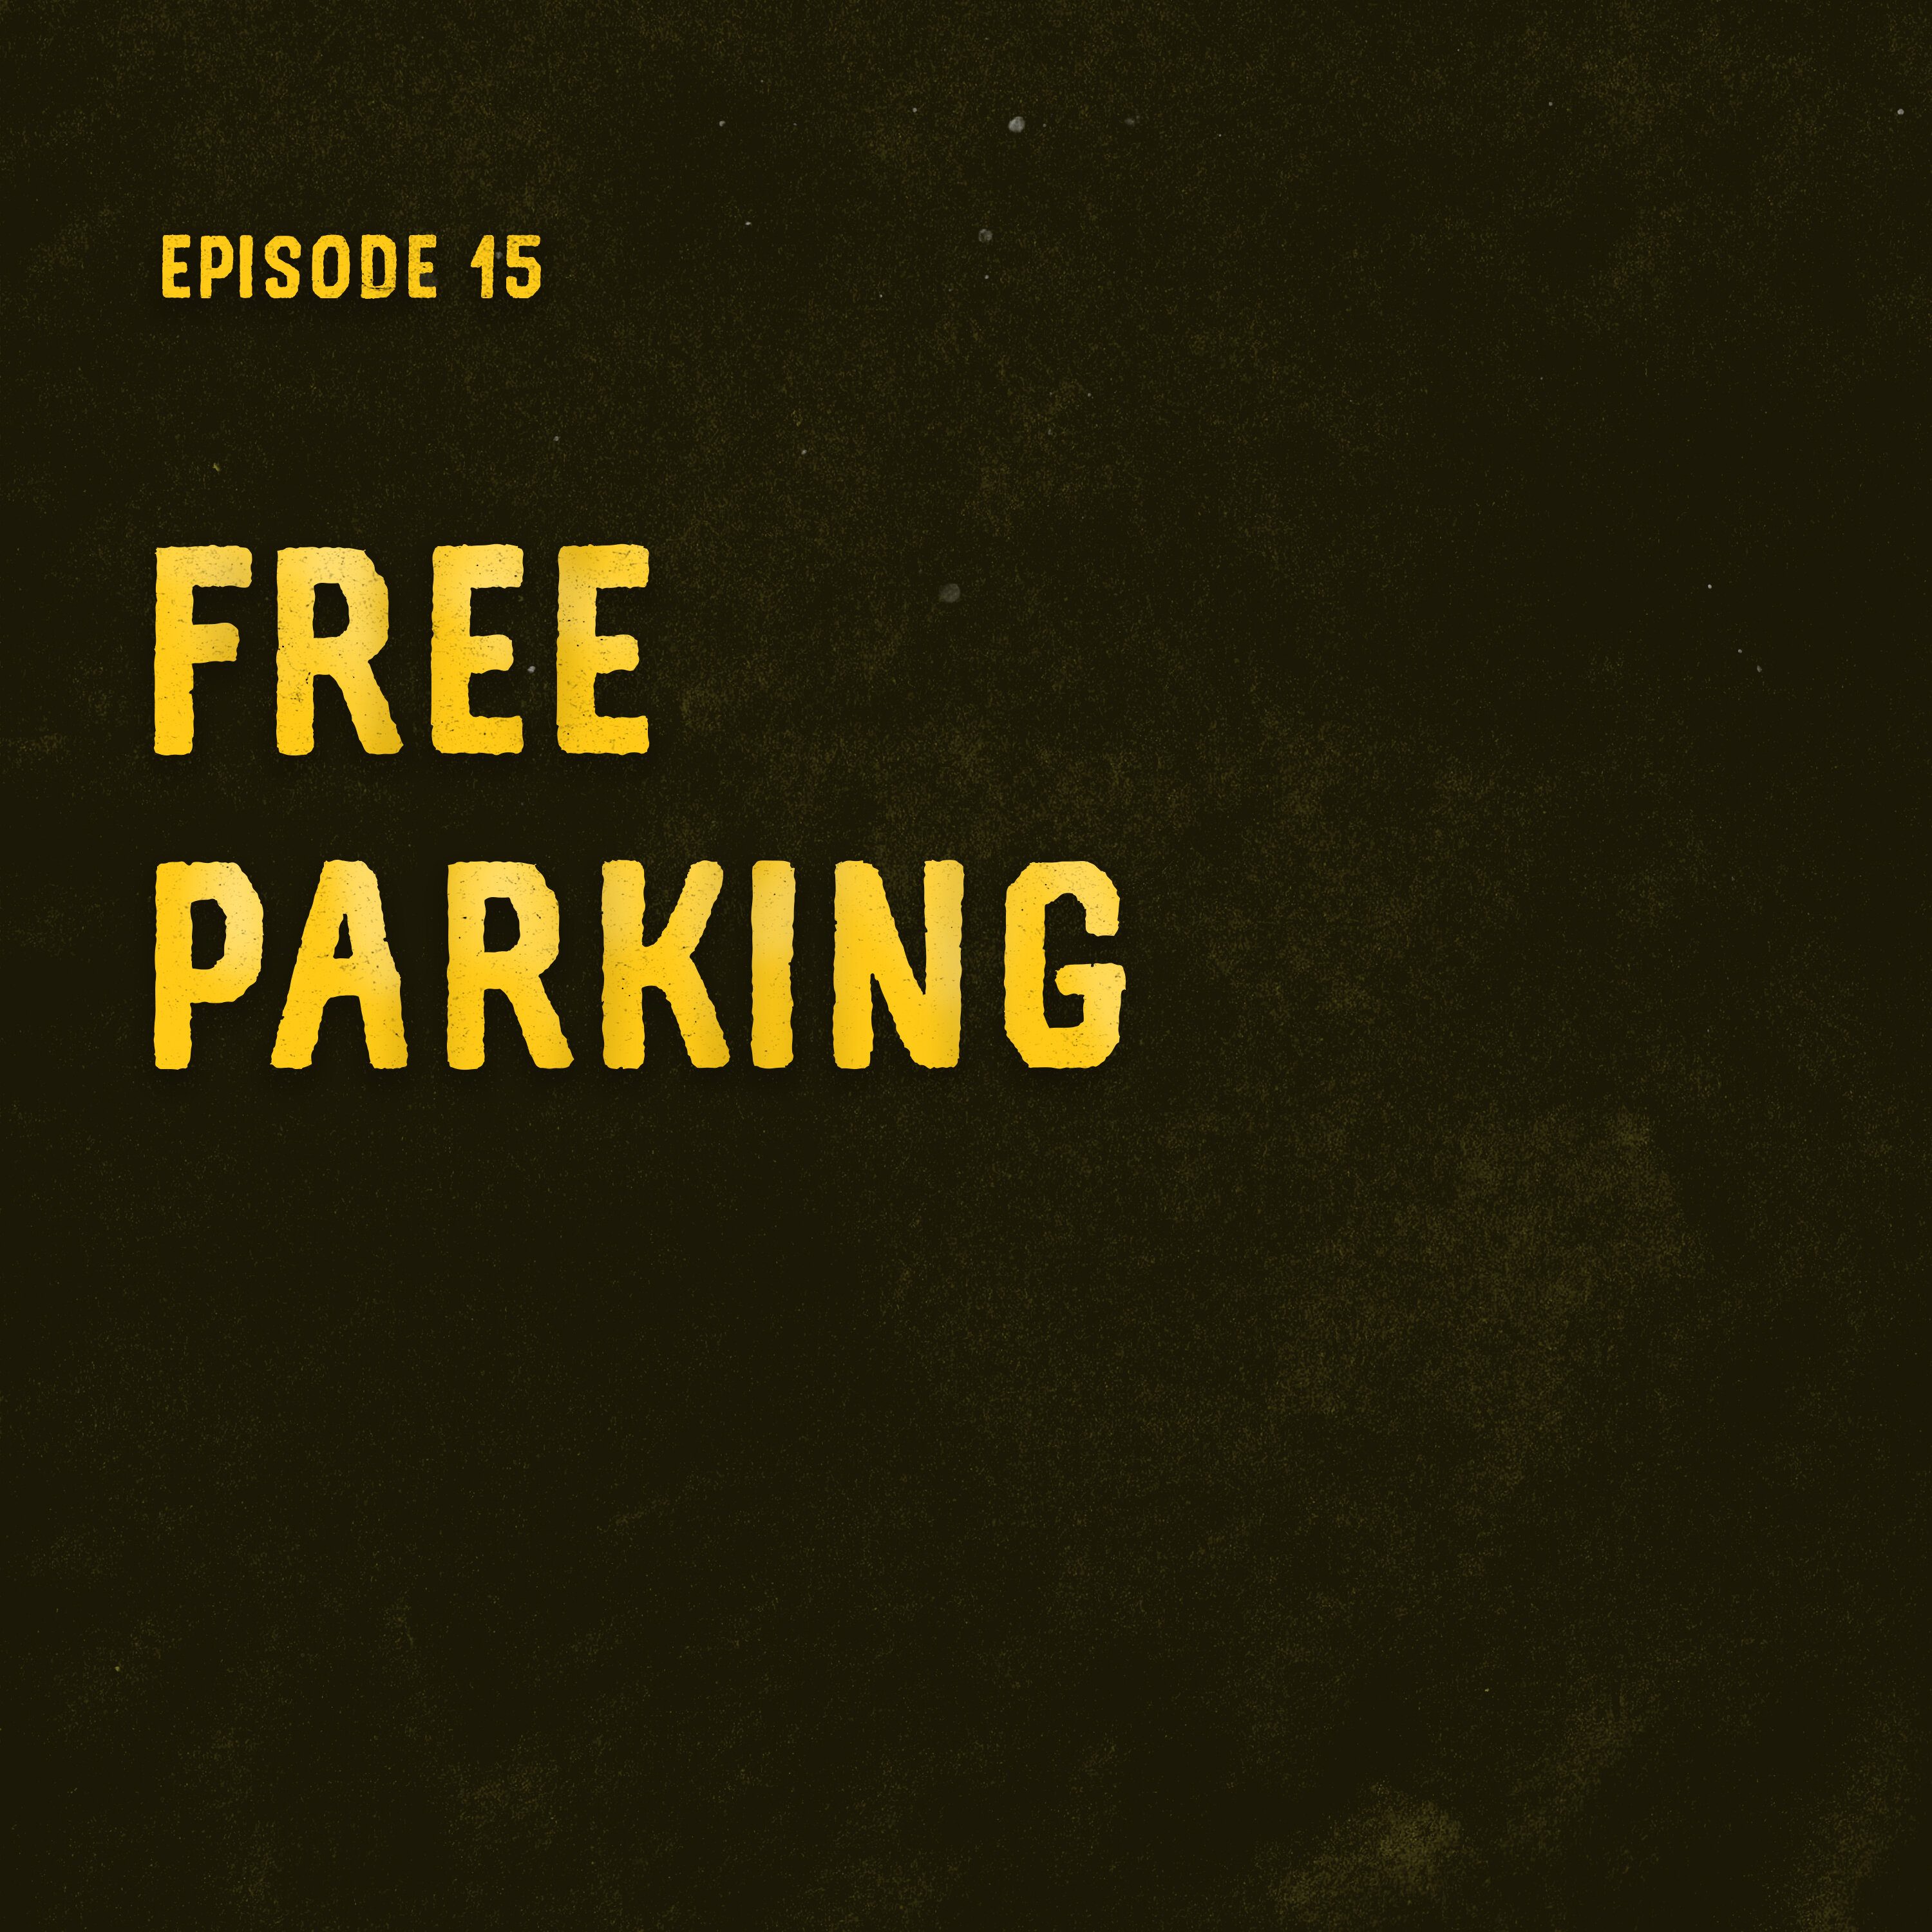 Free Parking Image